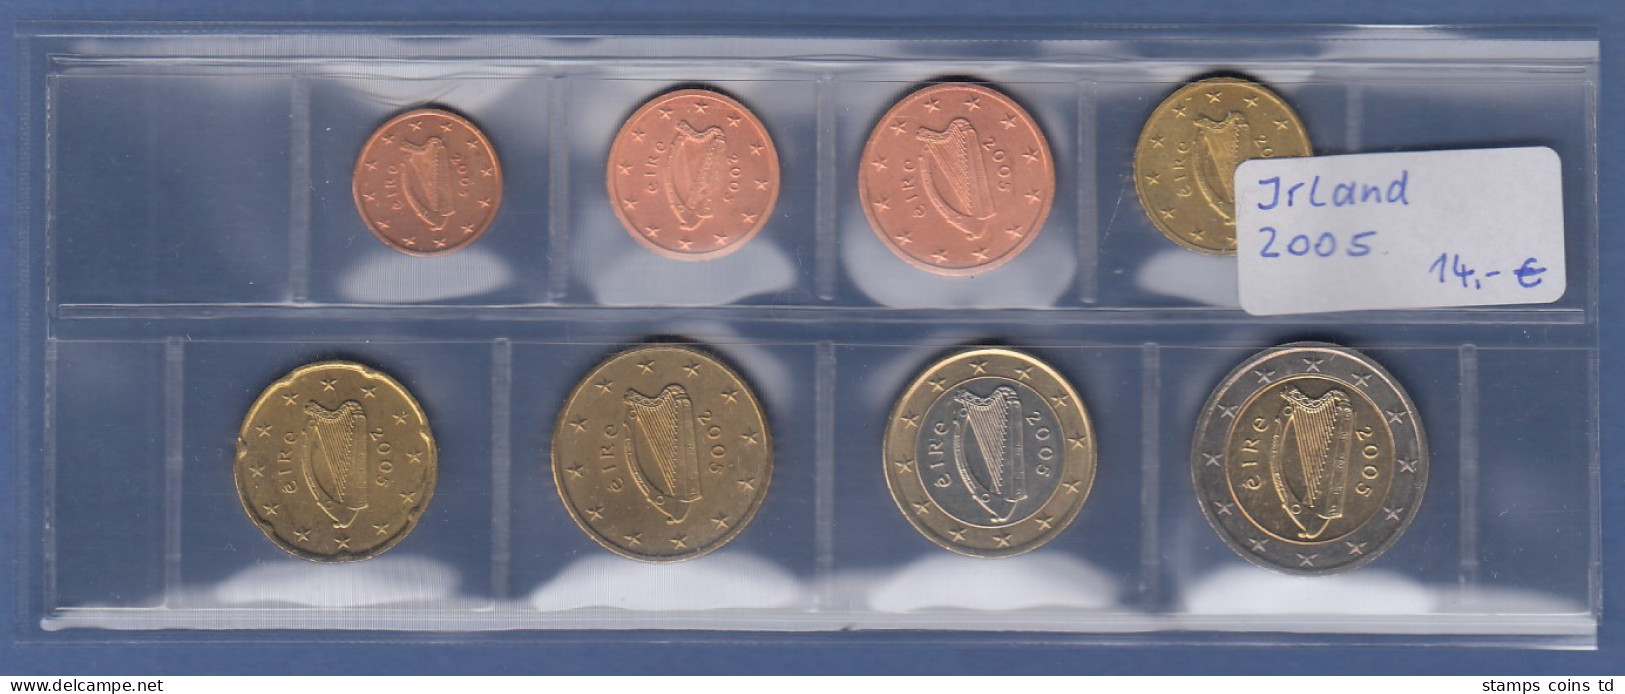 Irland EURO-Kursmünzensatz Jahrgang 2005 Bankfrisch / Unzirkuliert - Sonstige – Europa